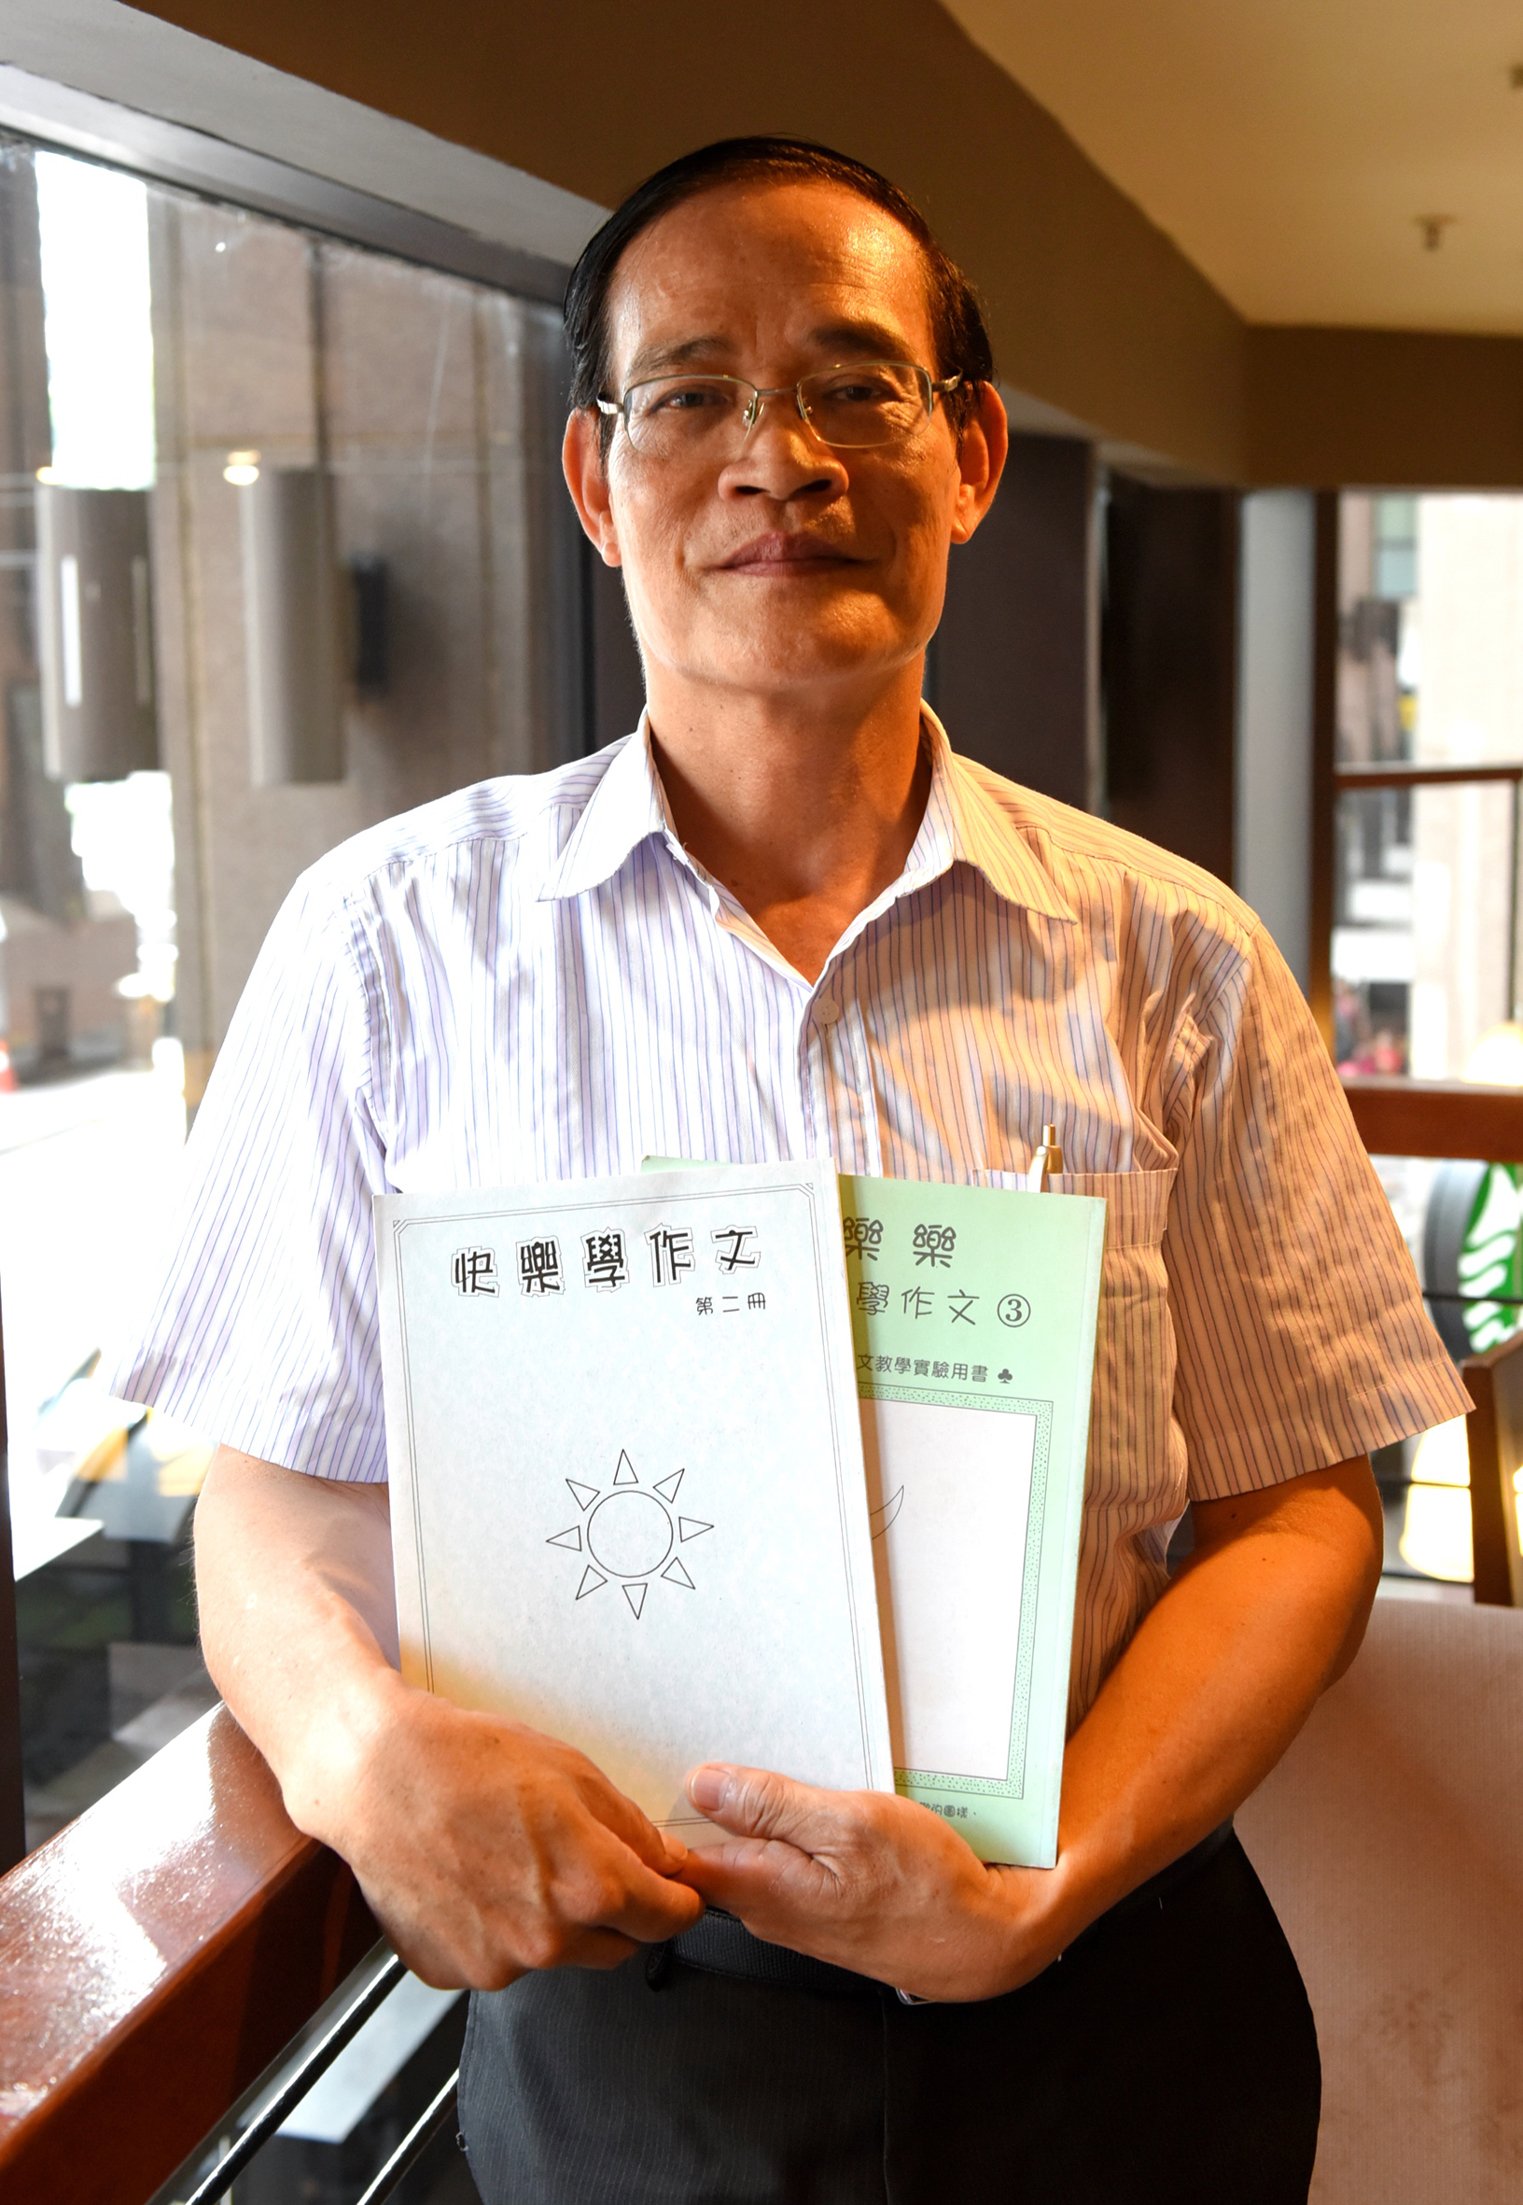 为推广趣味性教学，陈清枝出版《快乐学作文》学习教材书，以生动性的内容，引发孩子进行思考。